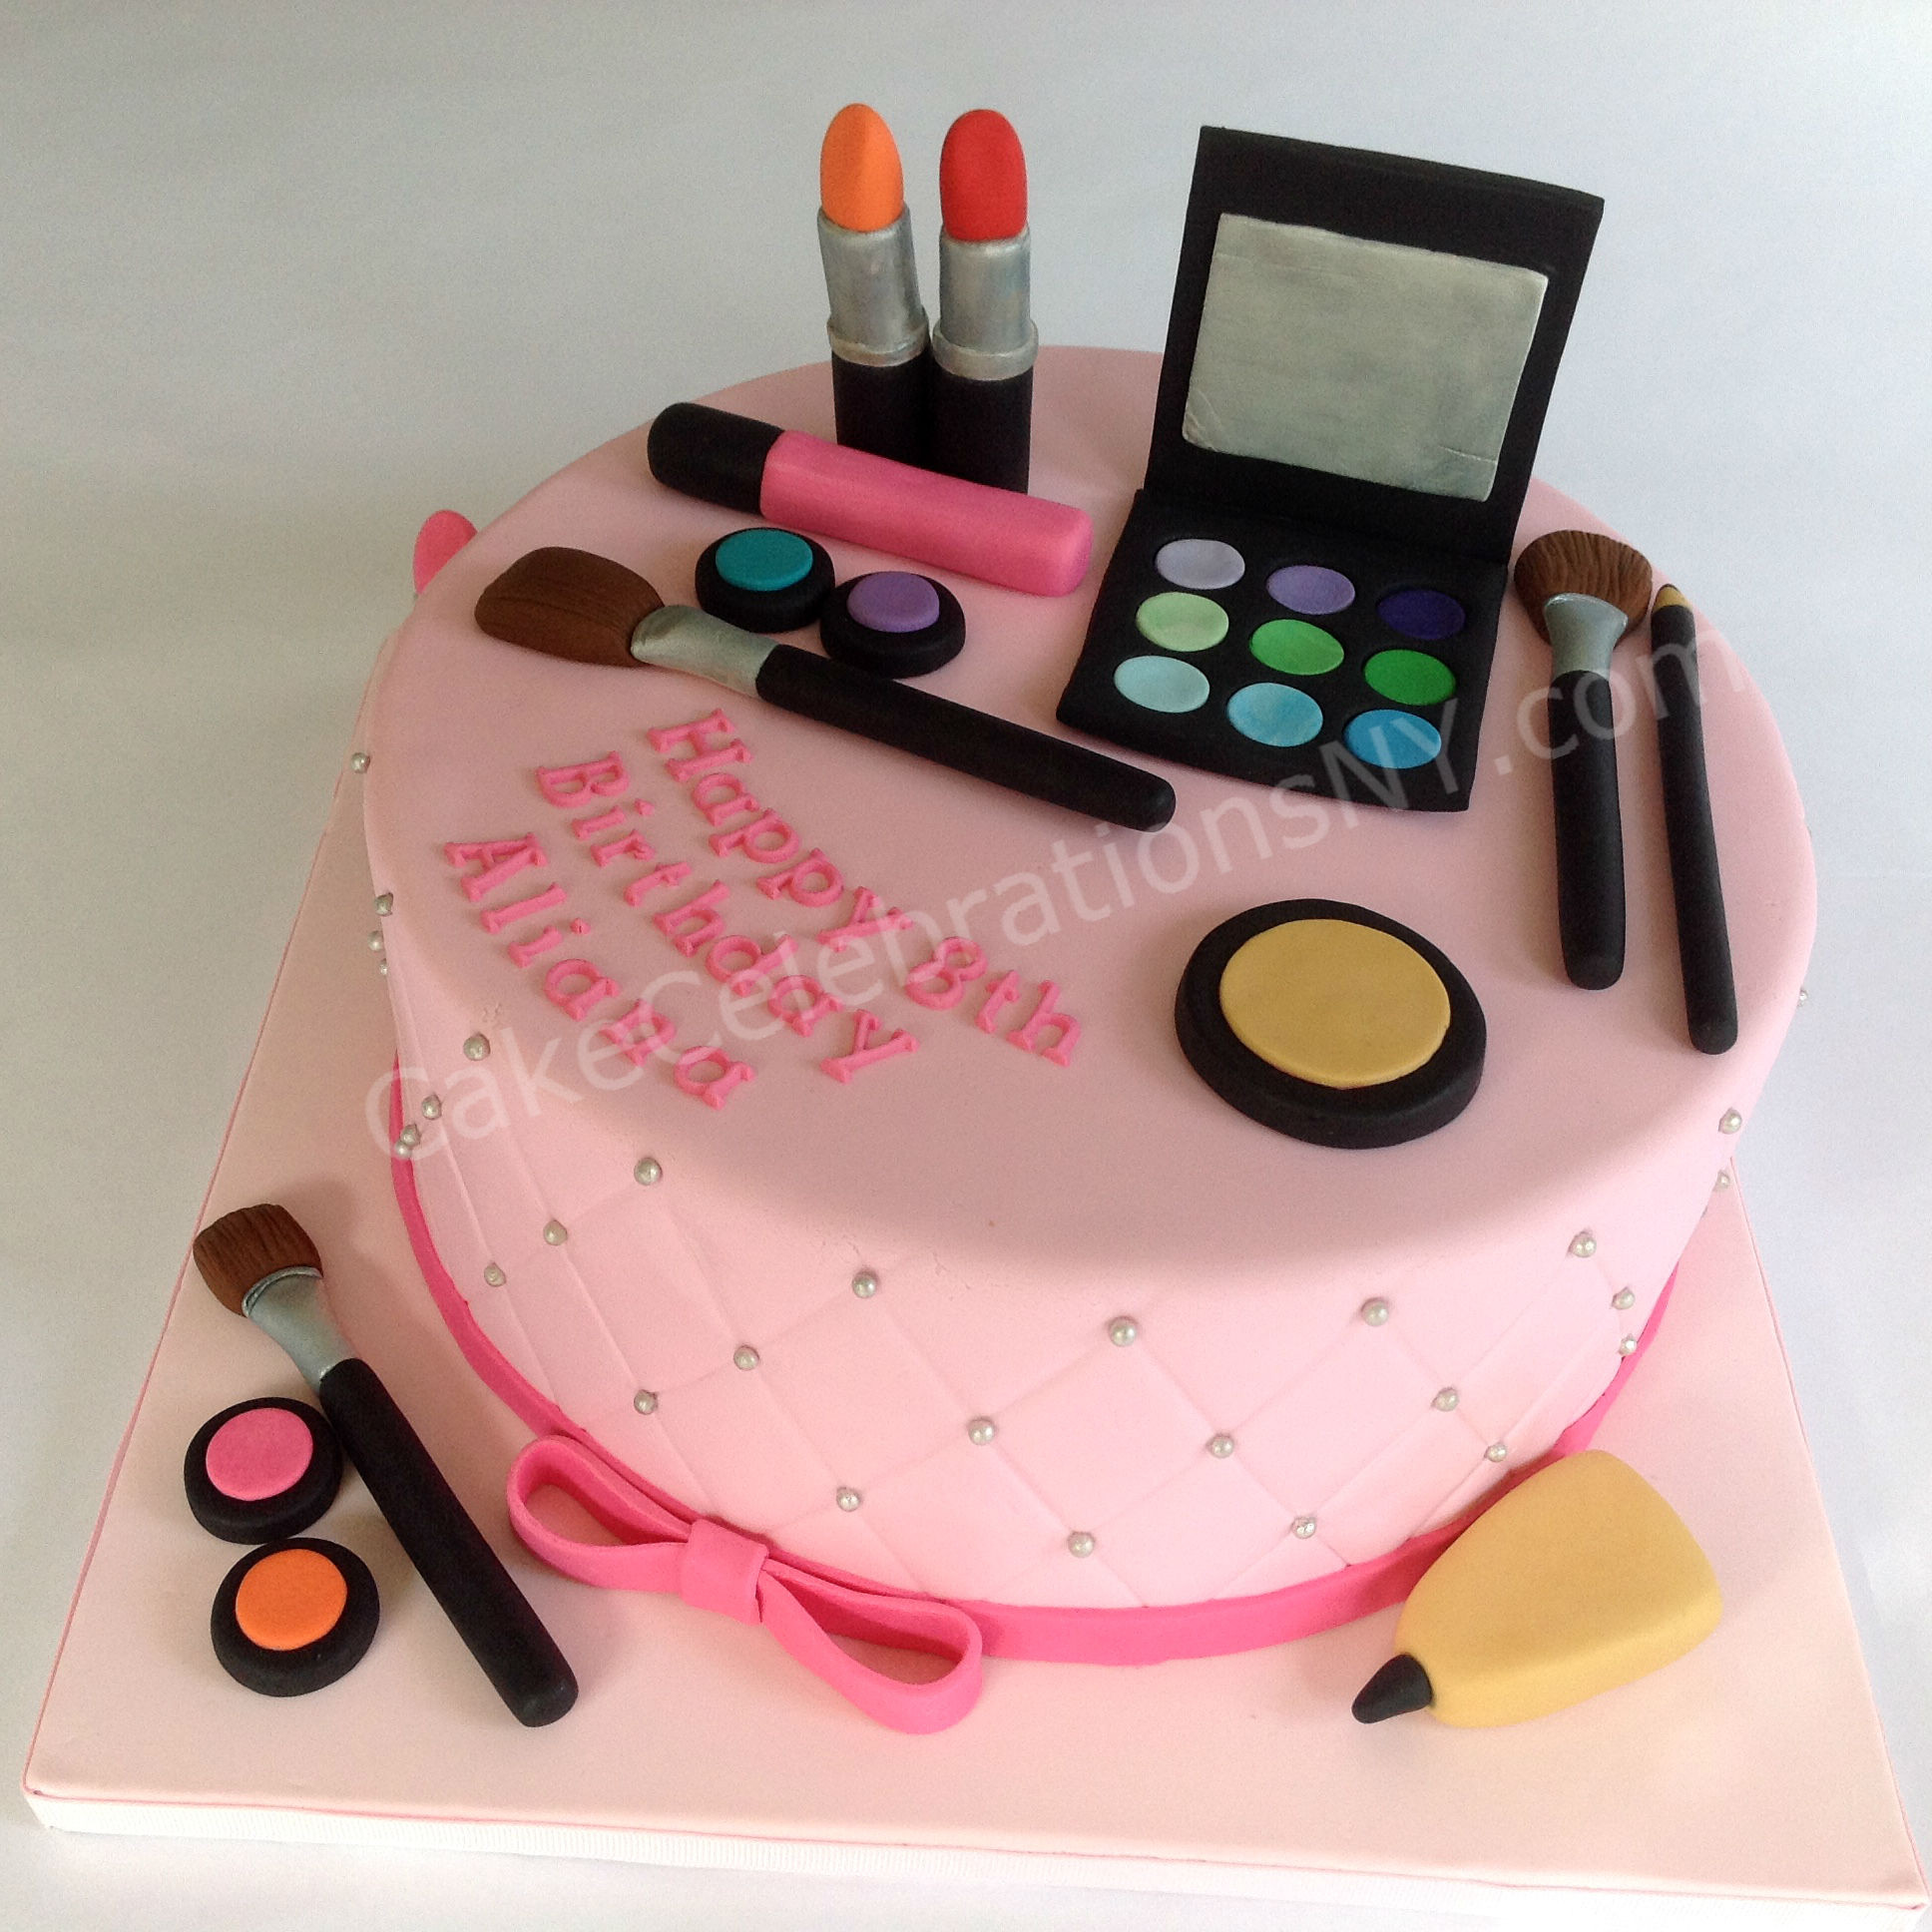 Makeup Birthday Cake
 Makeup Birthday Cake